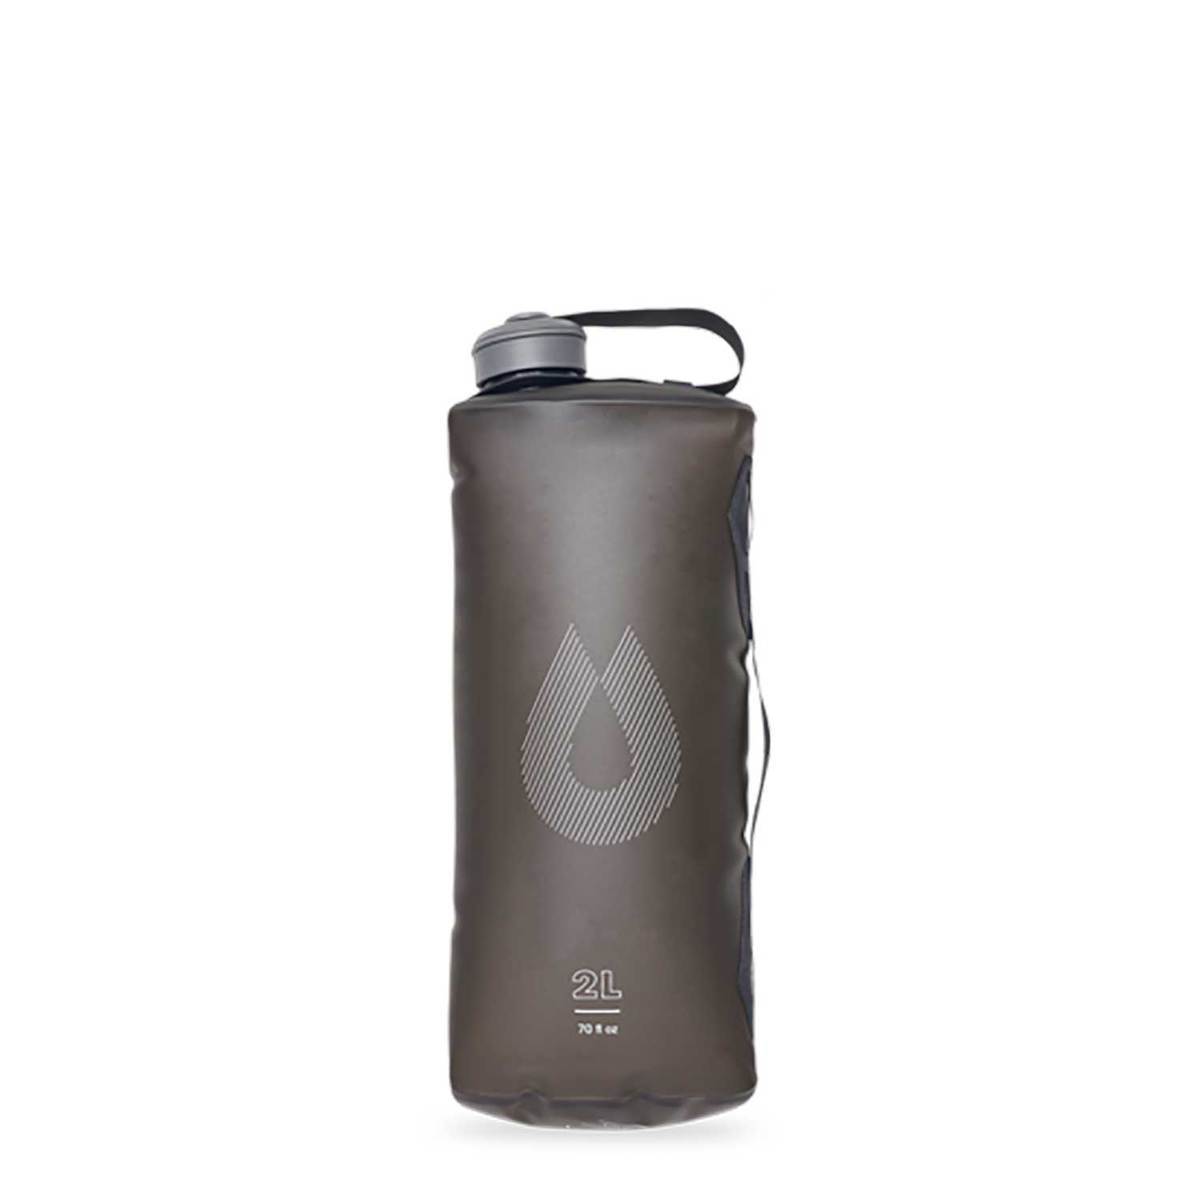 https://www.sportsmans.com/medias/hydrapak-seeker-2-liter-water-bag-mammoth-1671407-1.jpg?context=bWFzdGVyfGltYWdlc3wyODU3MHxpbWFnZS9qcGVnfGltYWdlcy9oOTMvaGM1Lzk3ODM3NTI5NDk3OTAuanBnfDVmY2MxYWIzZTExMzRlOWJmOGU1MGIzYTQ2ZjJmZDNkNDU4NGJiM2M4ZGM2NzBkZjVlNTFiNzY2MDhkM2RmNzM